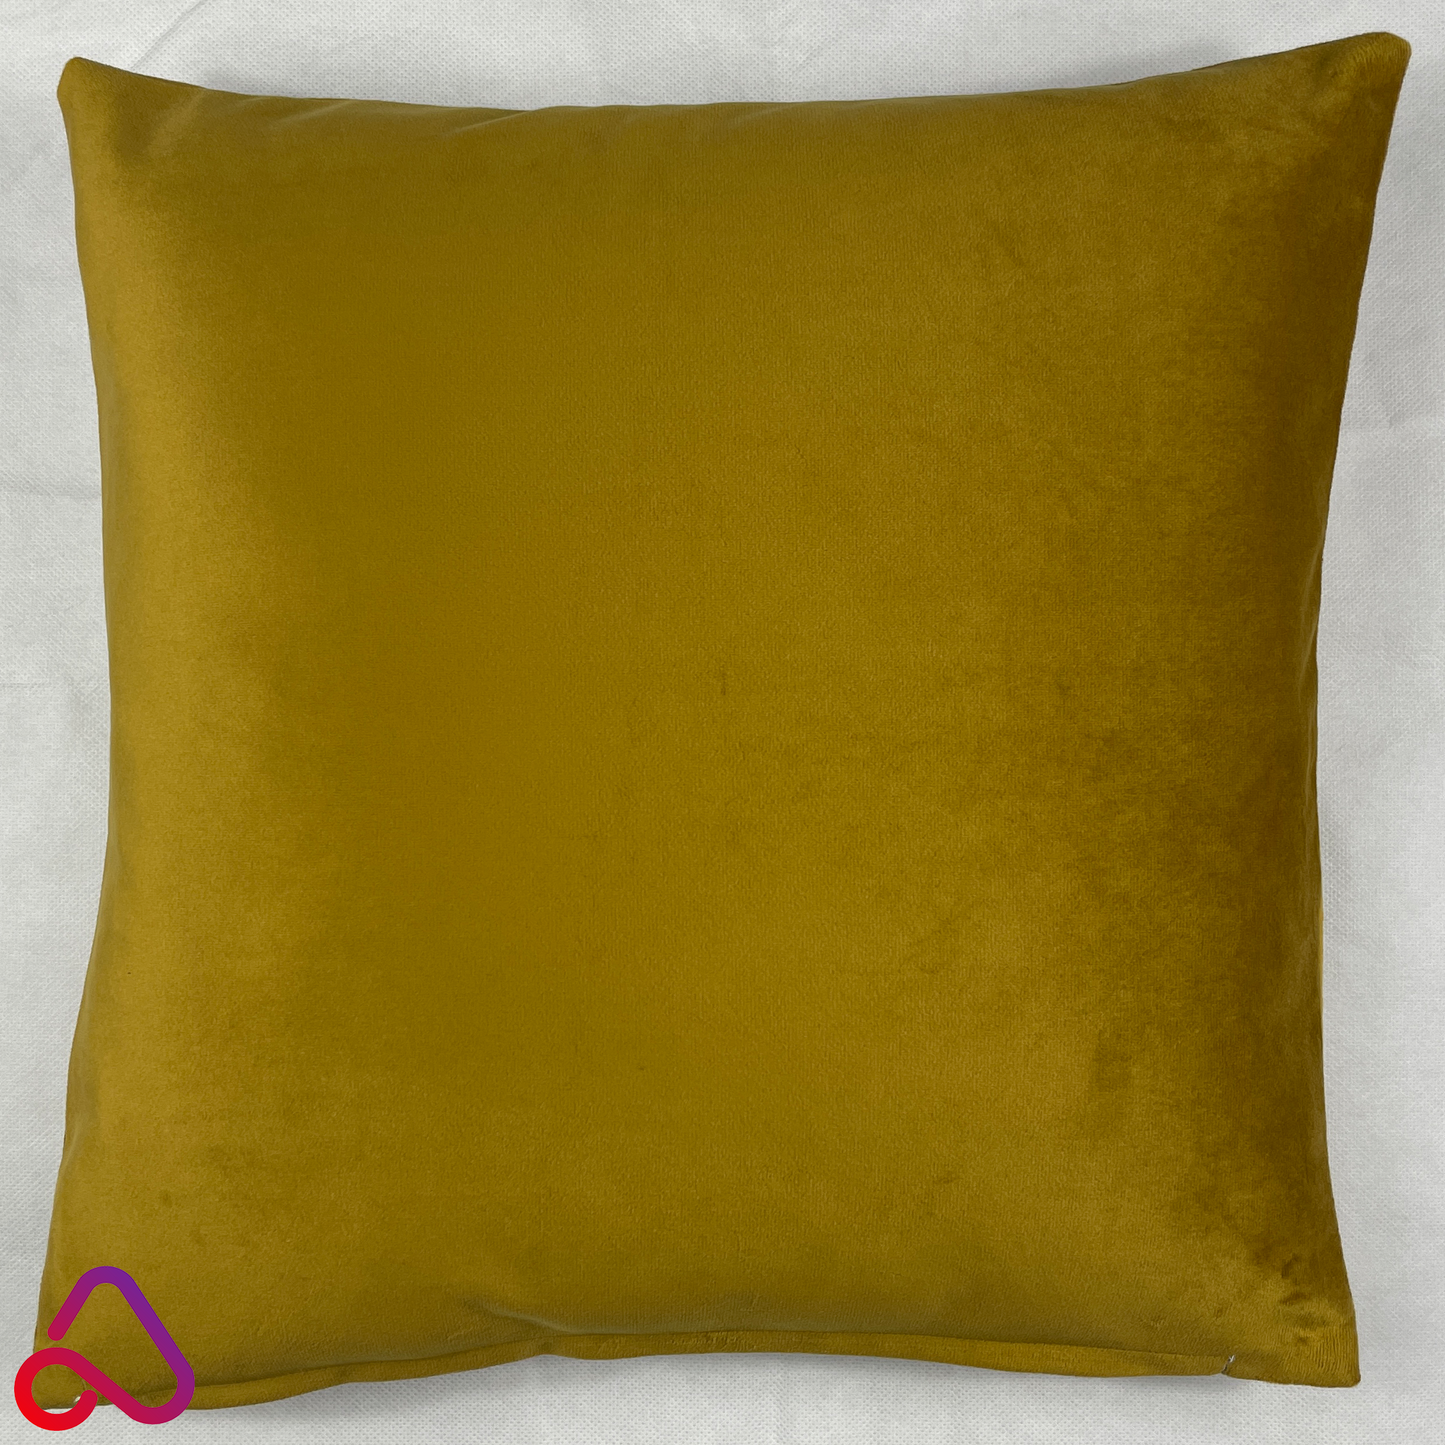 Handmade Plush Velvet Cushion Cover Soft Feel Pillow Case Home Sofa Bed Decor